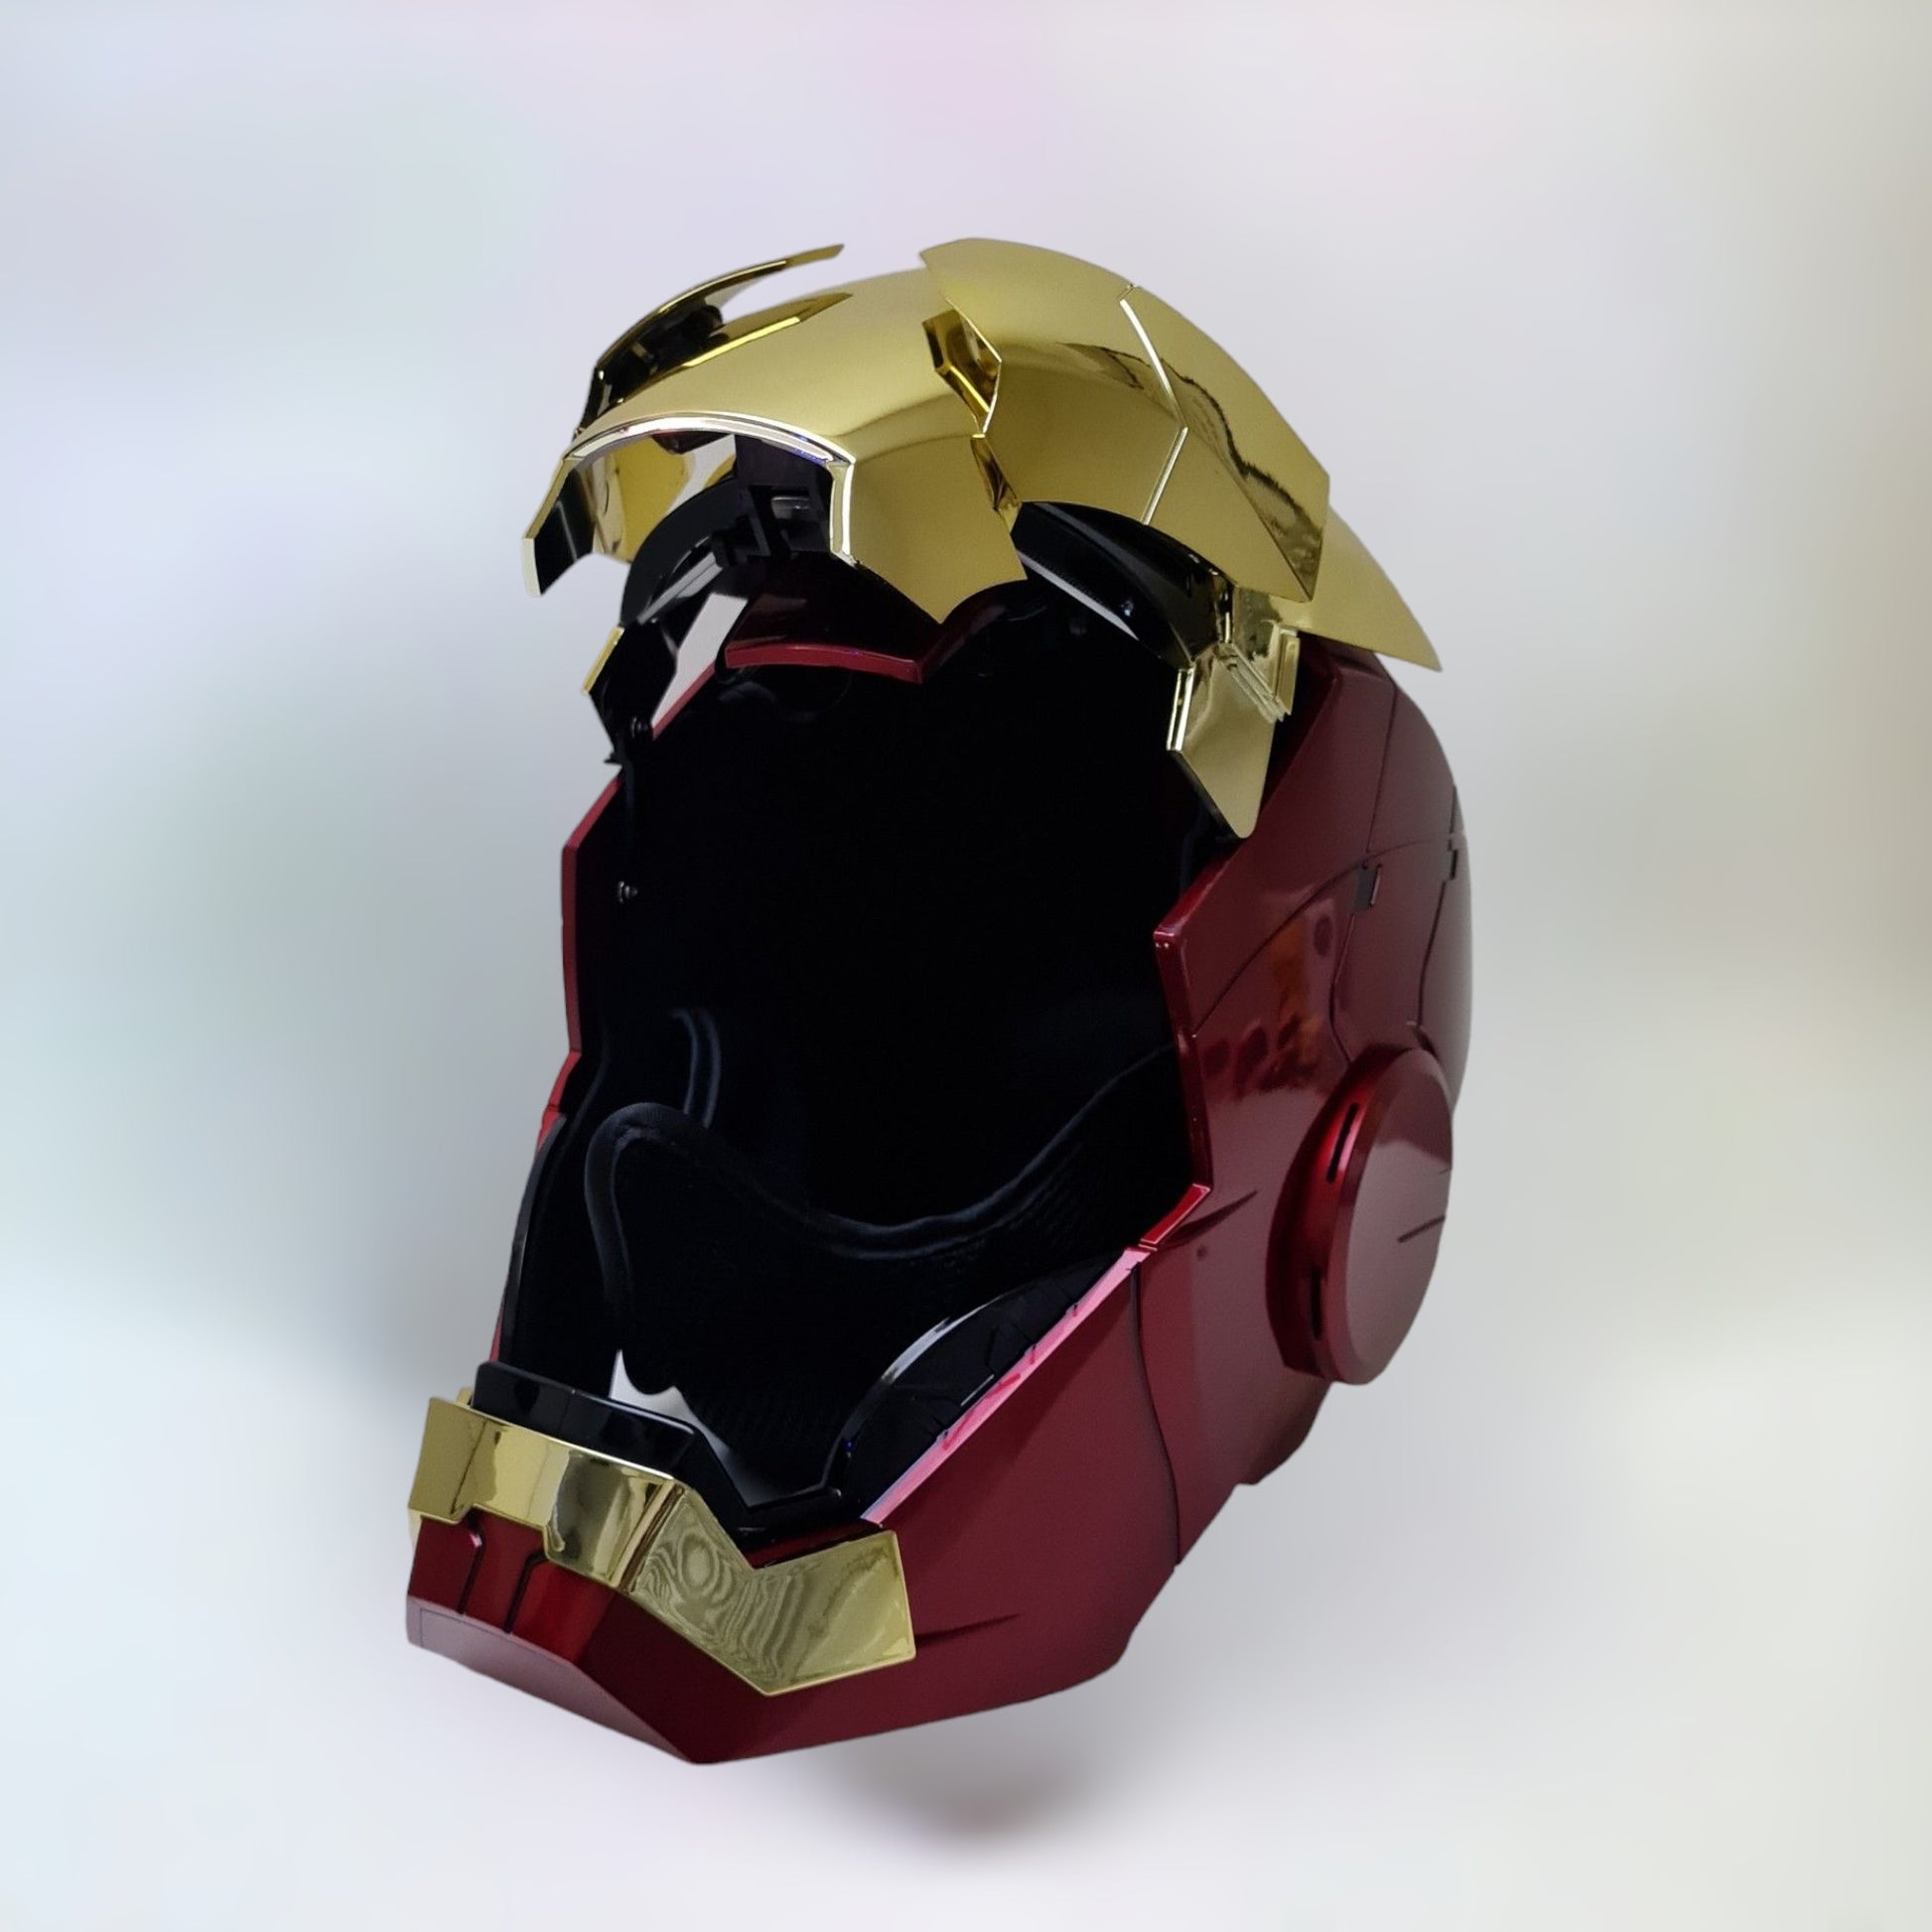 Iron Man Helmet MK5 Gold Jarvis Voice Activation Open Style 1